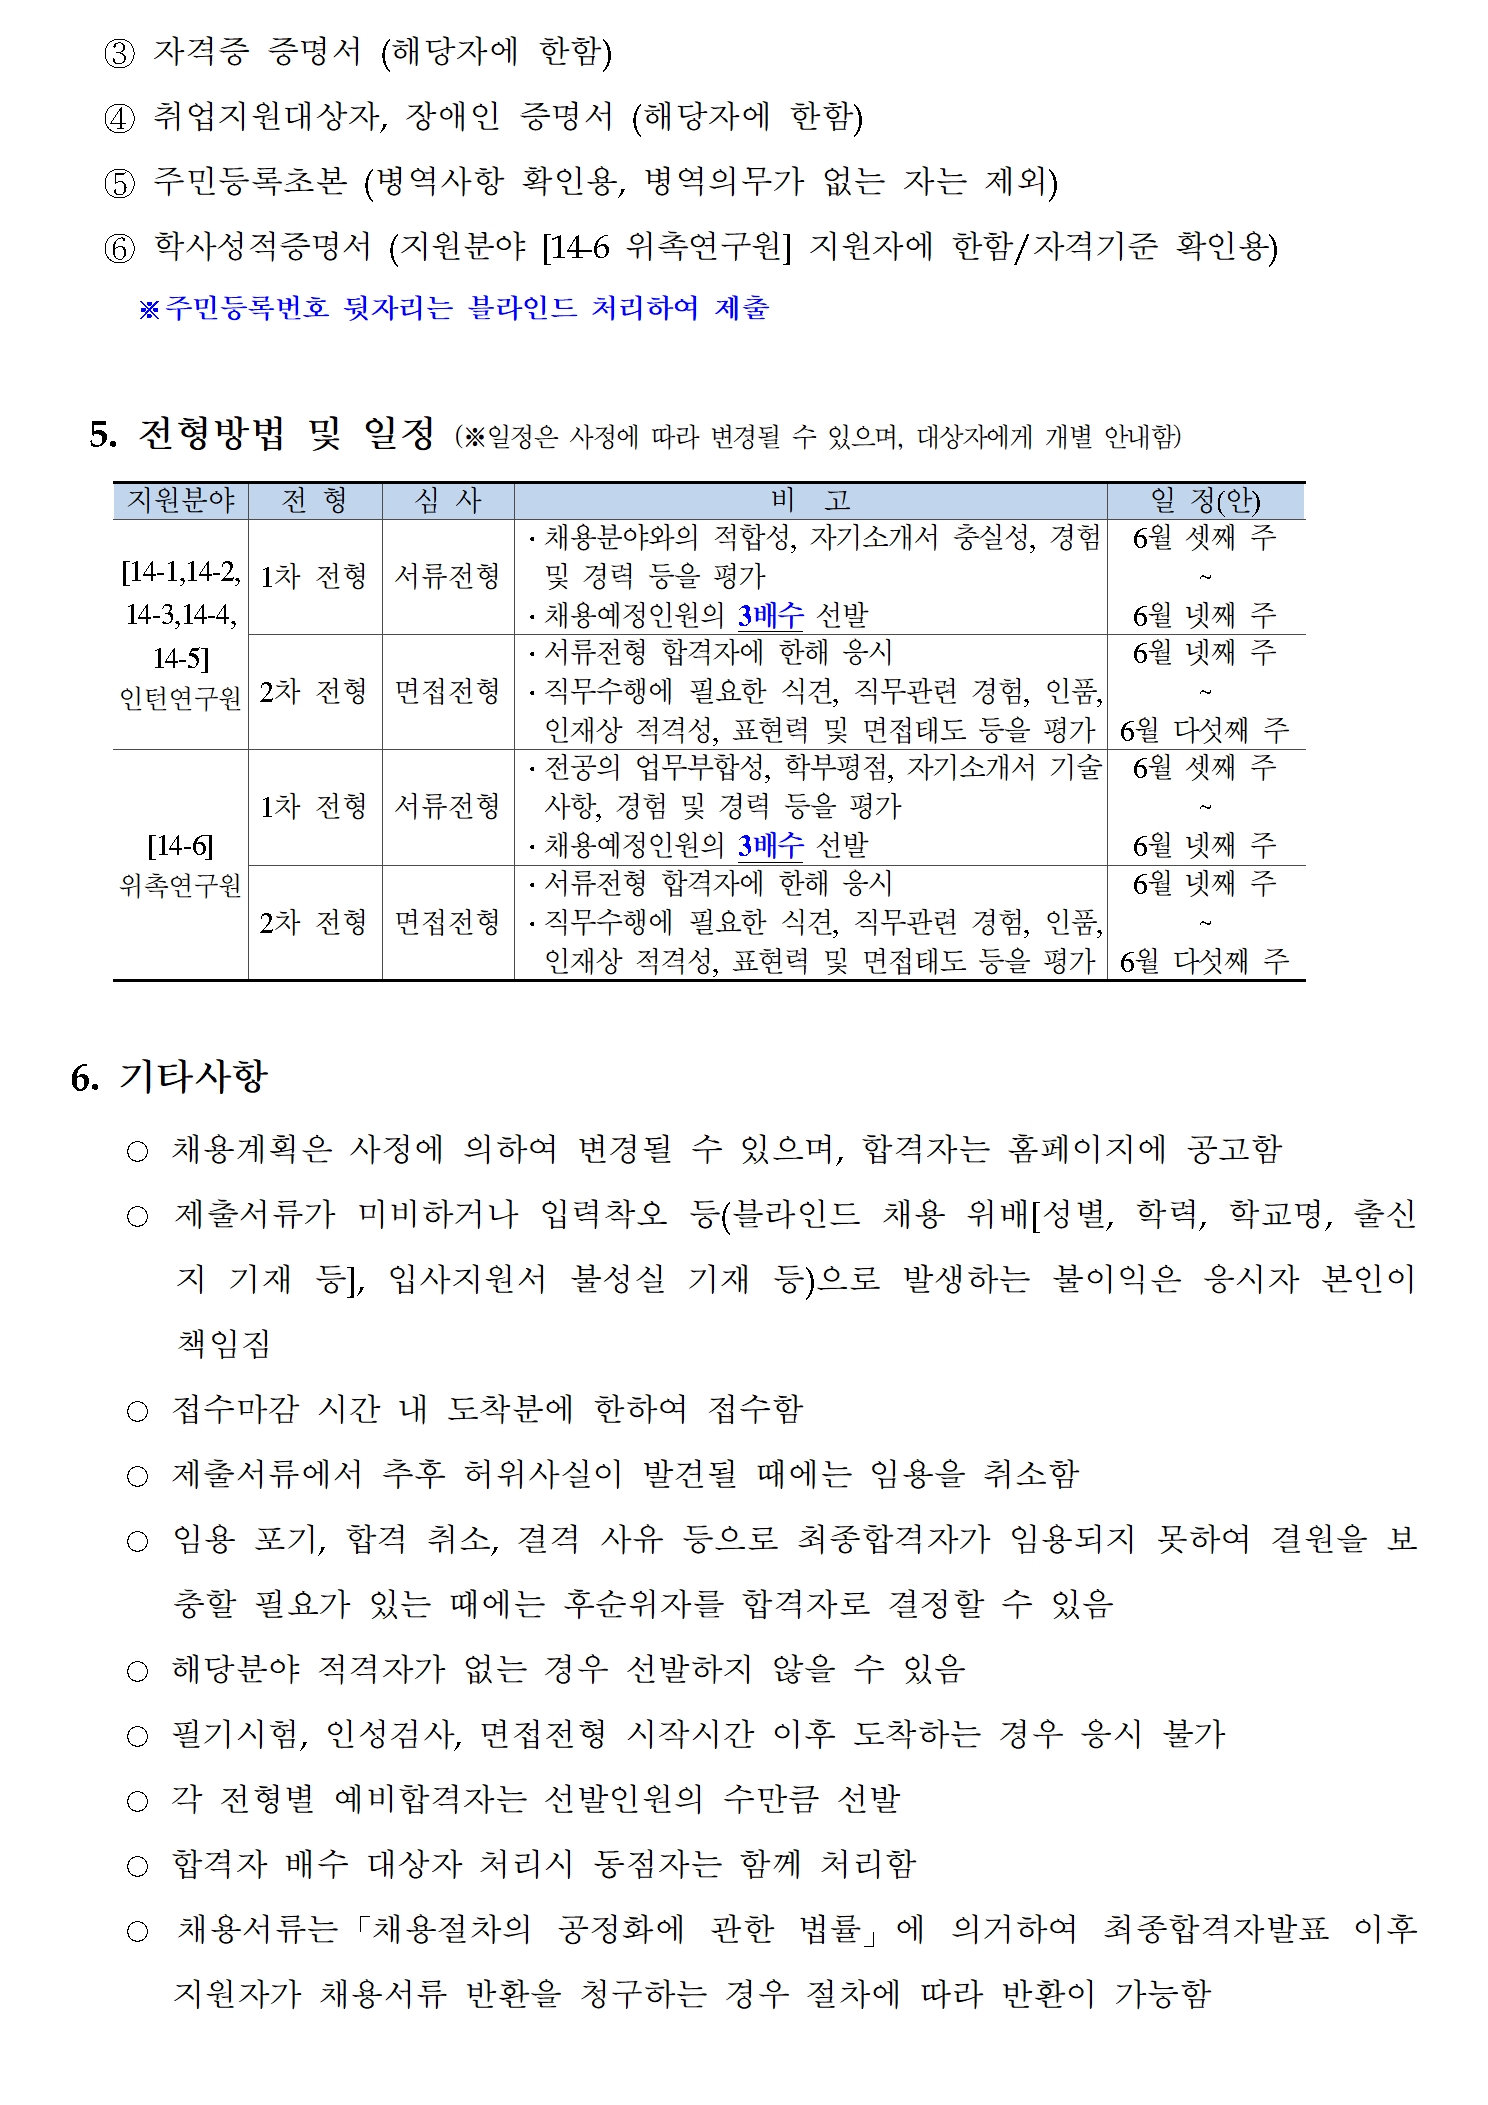 (3/3) 한국형사·법무정책연구원 제14차 채용공고 - 자세한 내용은 하단 참조